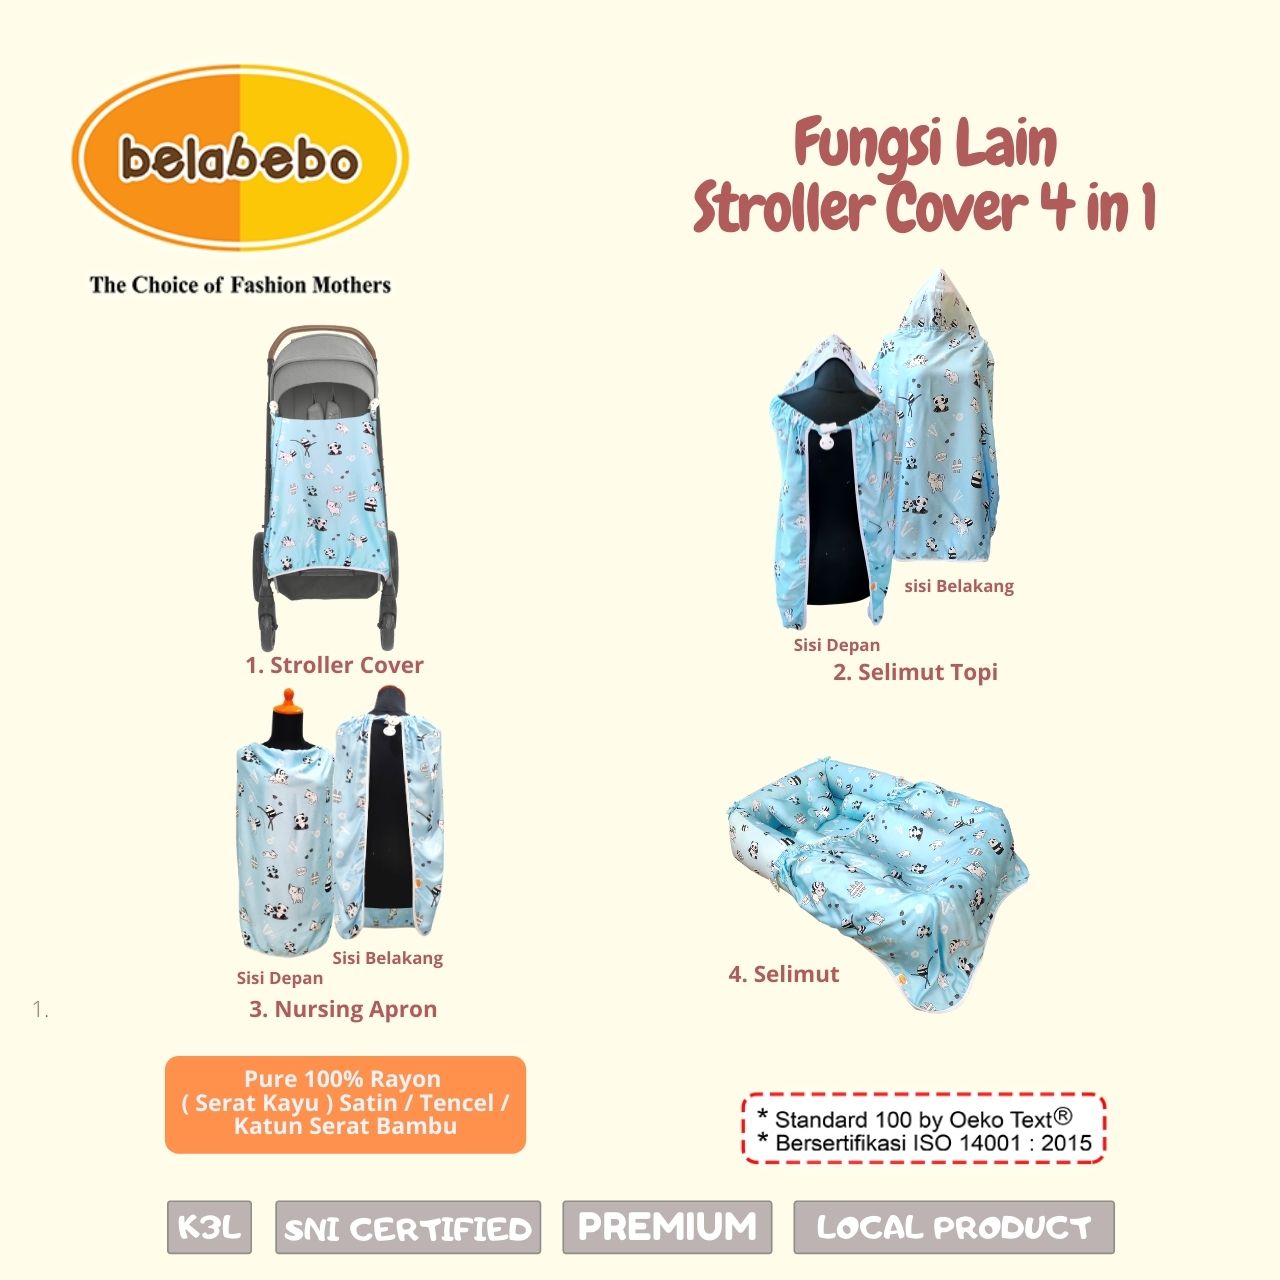 Fungsi Lain Stroller Cover 4 in 1 Belabebo